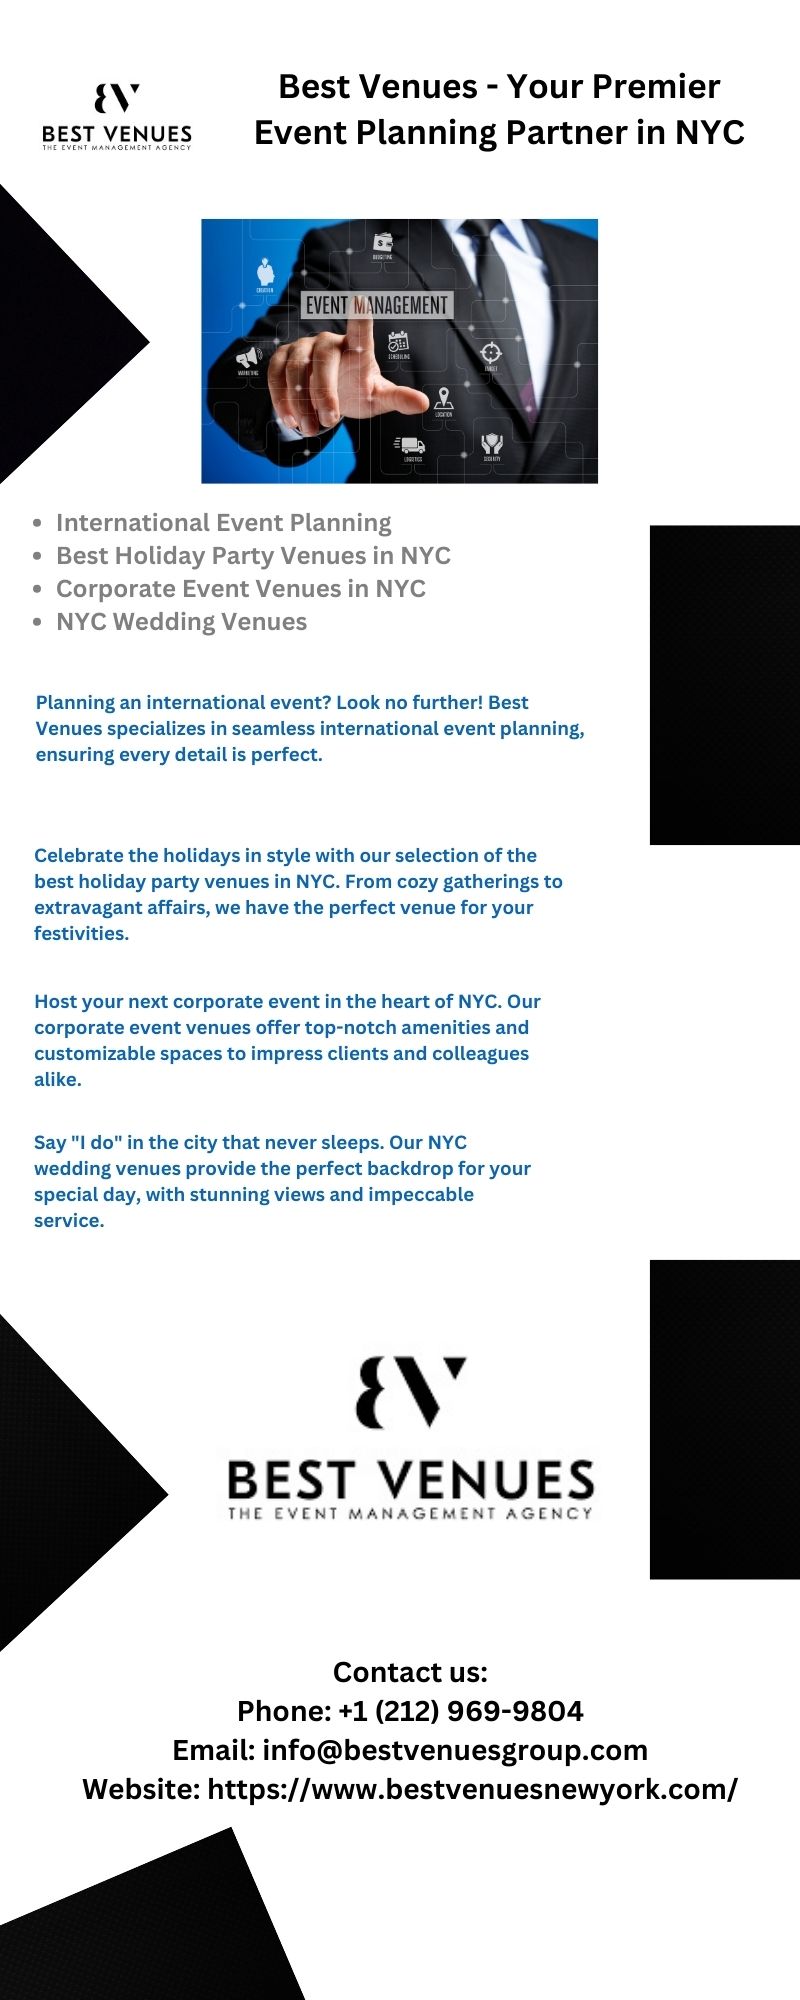 Best Venues - Your Premier Event Planning Partner in NYC - Social Social Social | Social Social Social